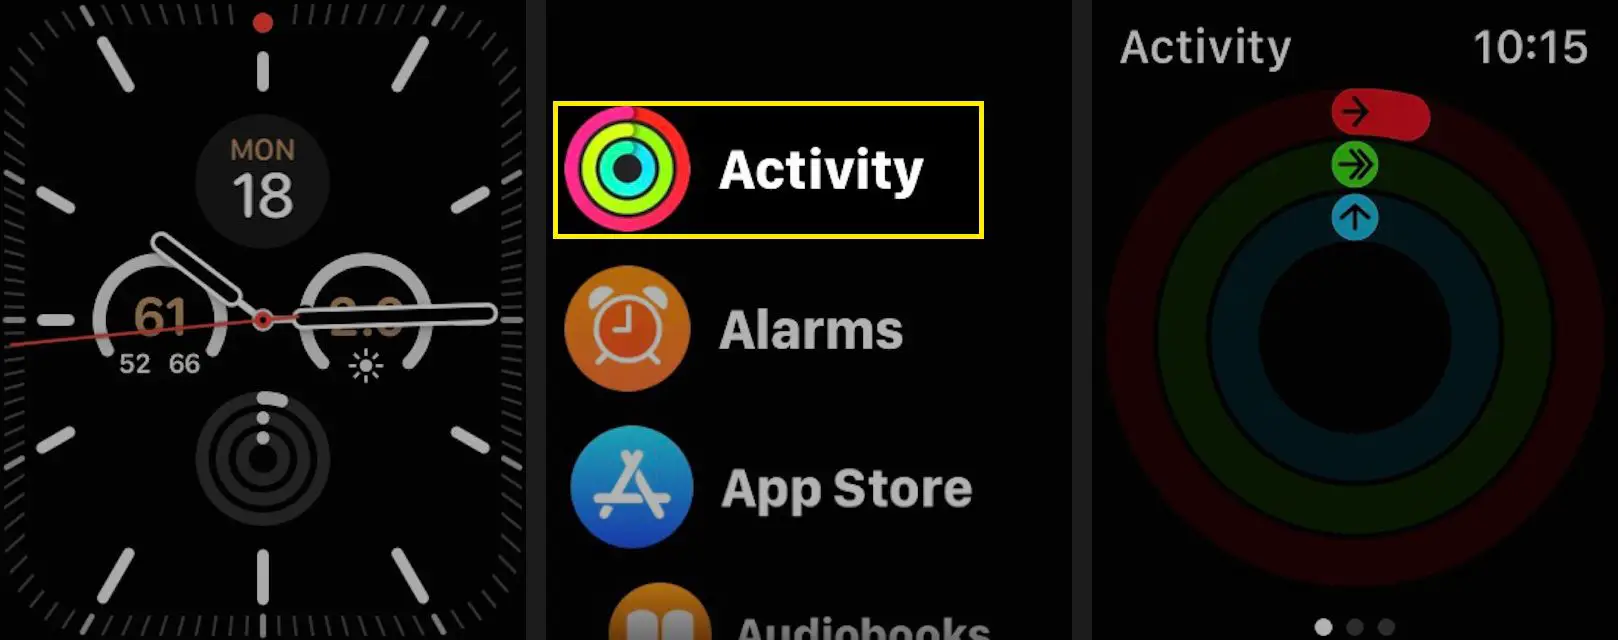 Inicie o aplicativo Activity em seu Apple Watch.  (O ícone do aplicativo mostra três anéis.)